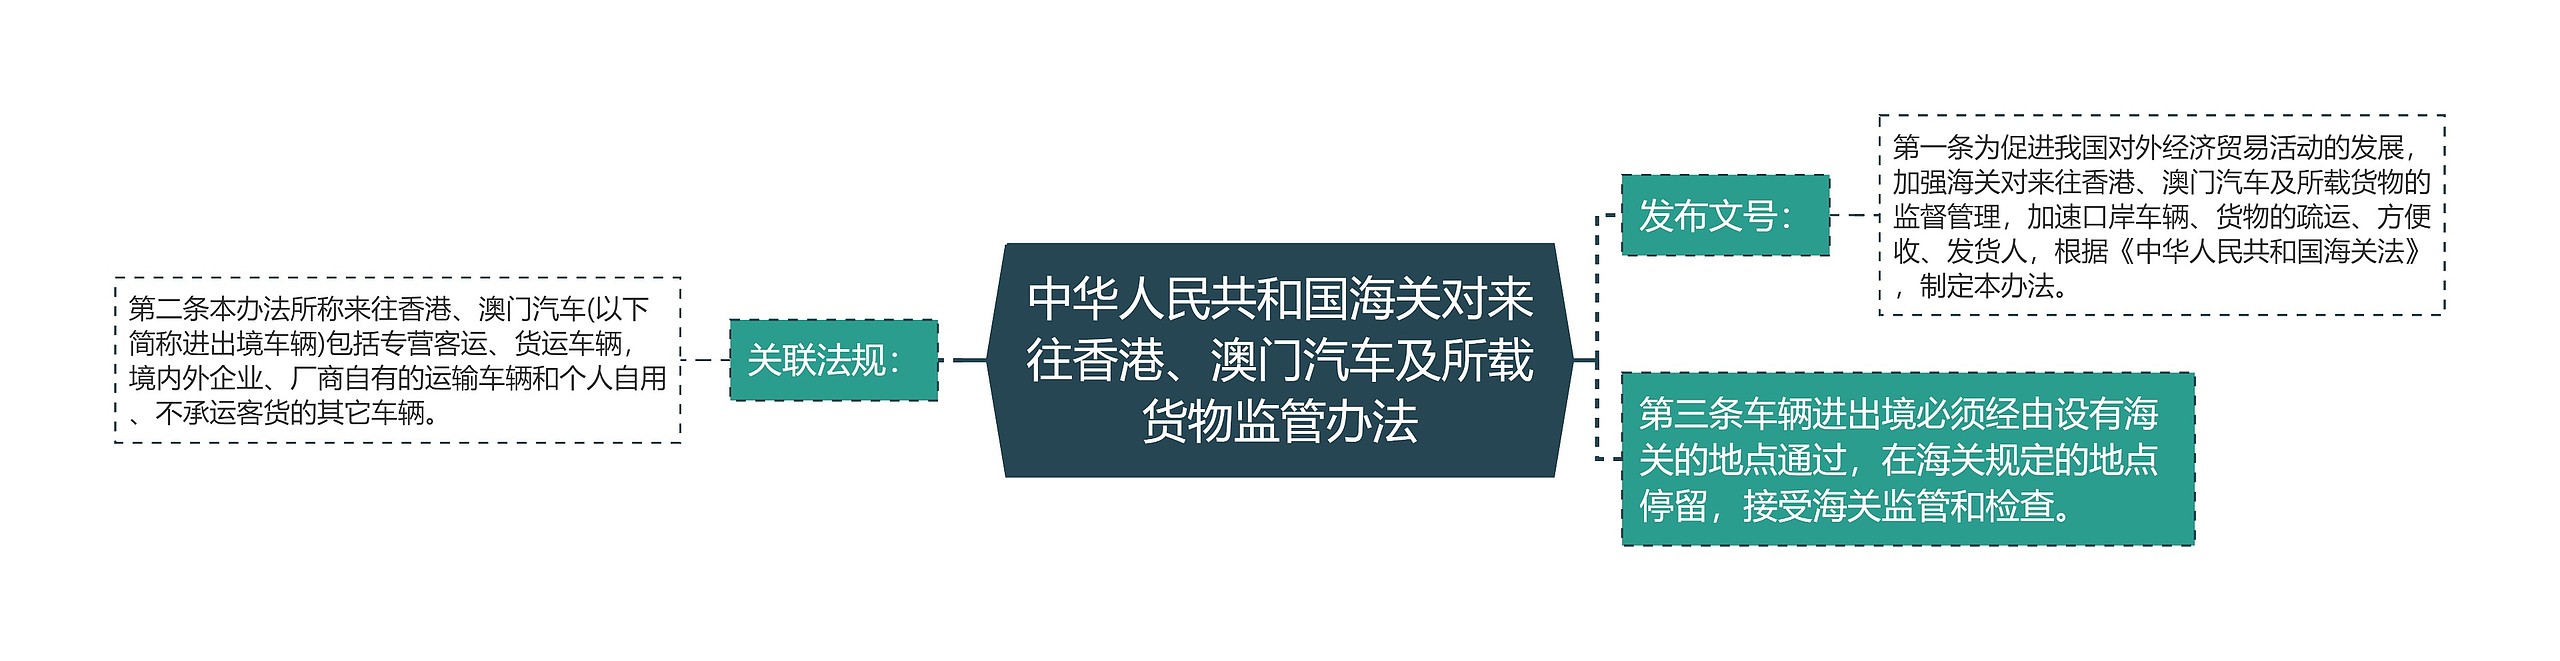 中华人民共和国海关对来往香港、澳门汽车及所载货物监管办法